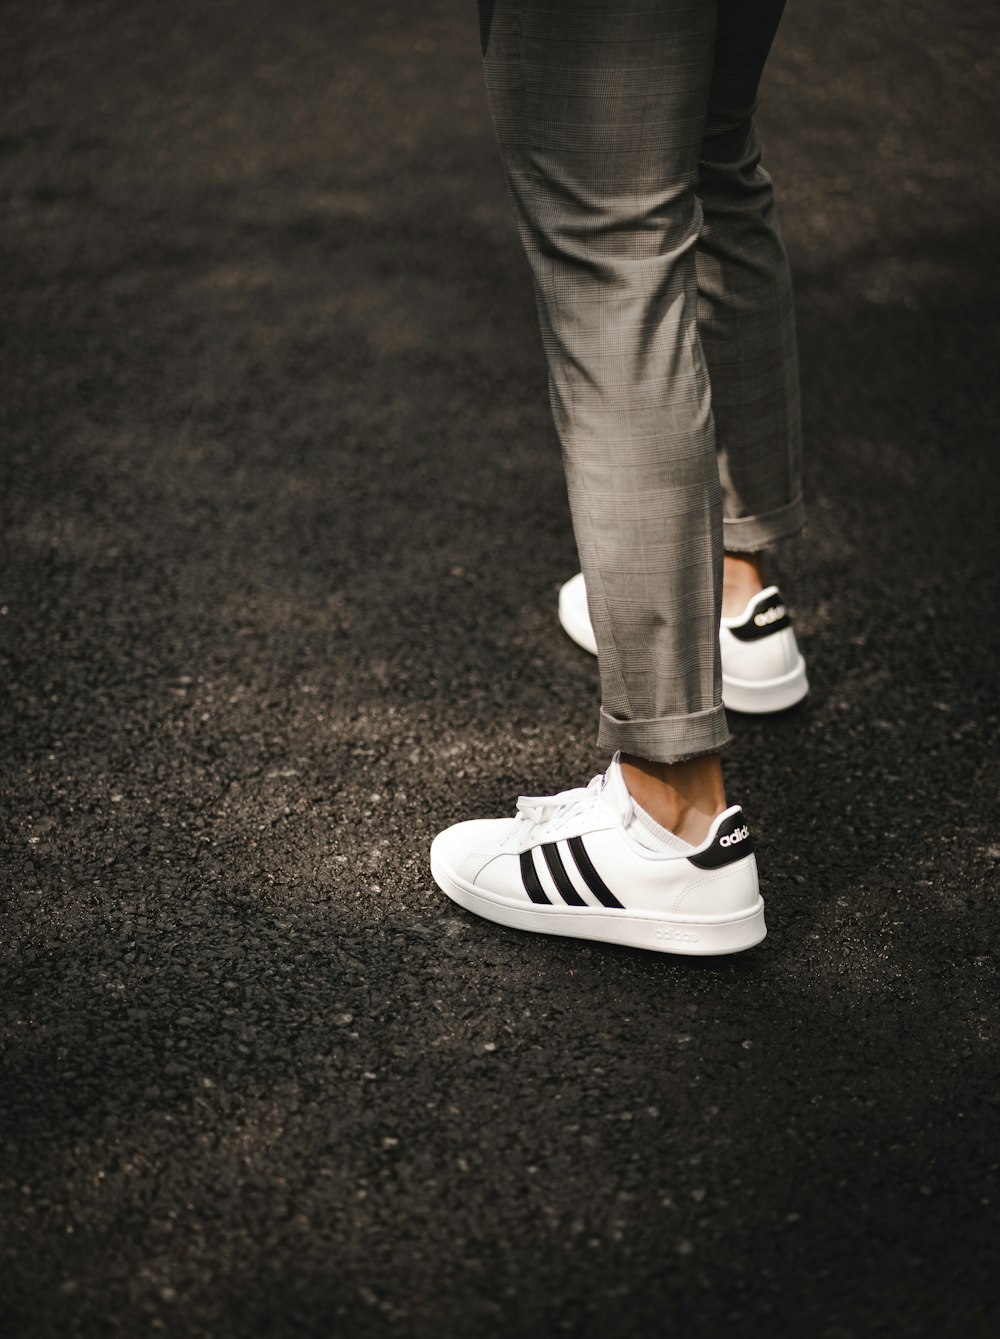 Foto Persona con pantalones grises y zapatillas blancas y negras – Imagen  Ropa gratis en Unsplash